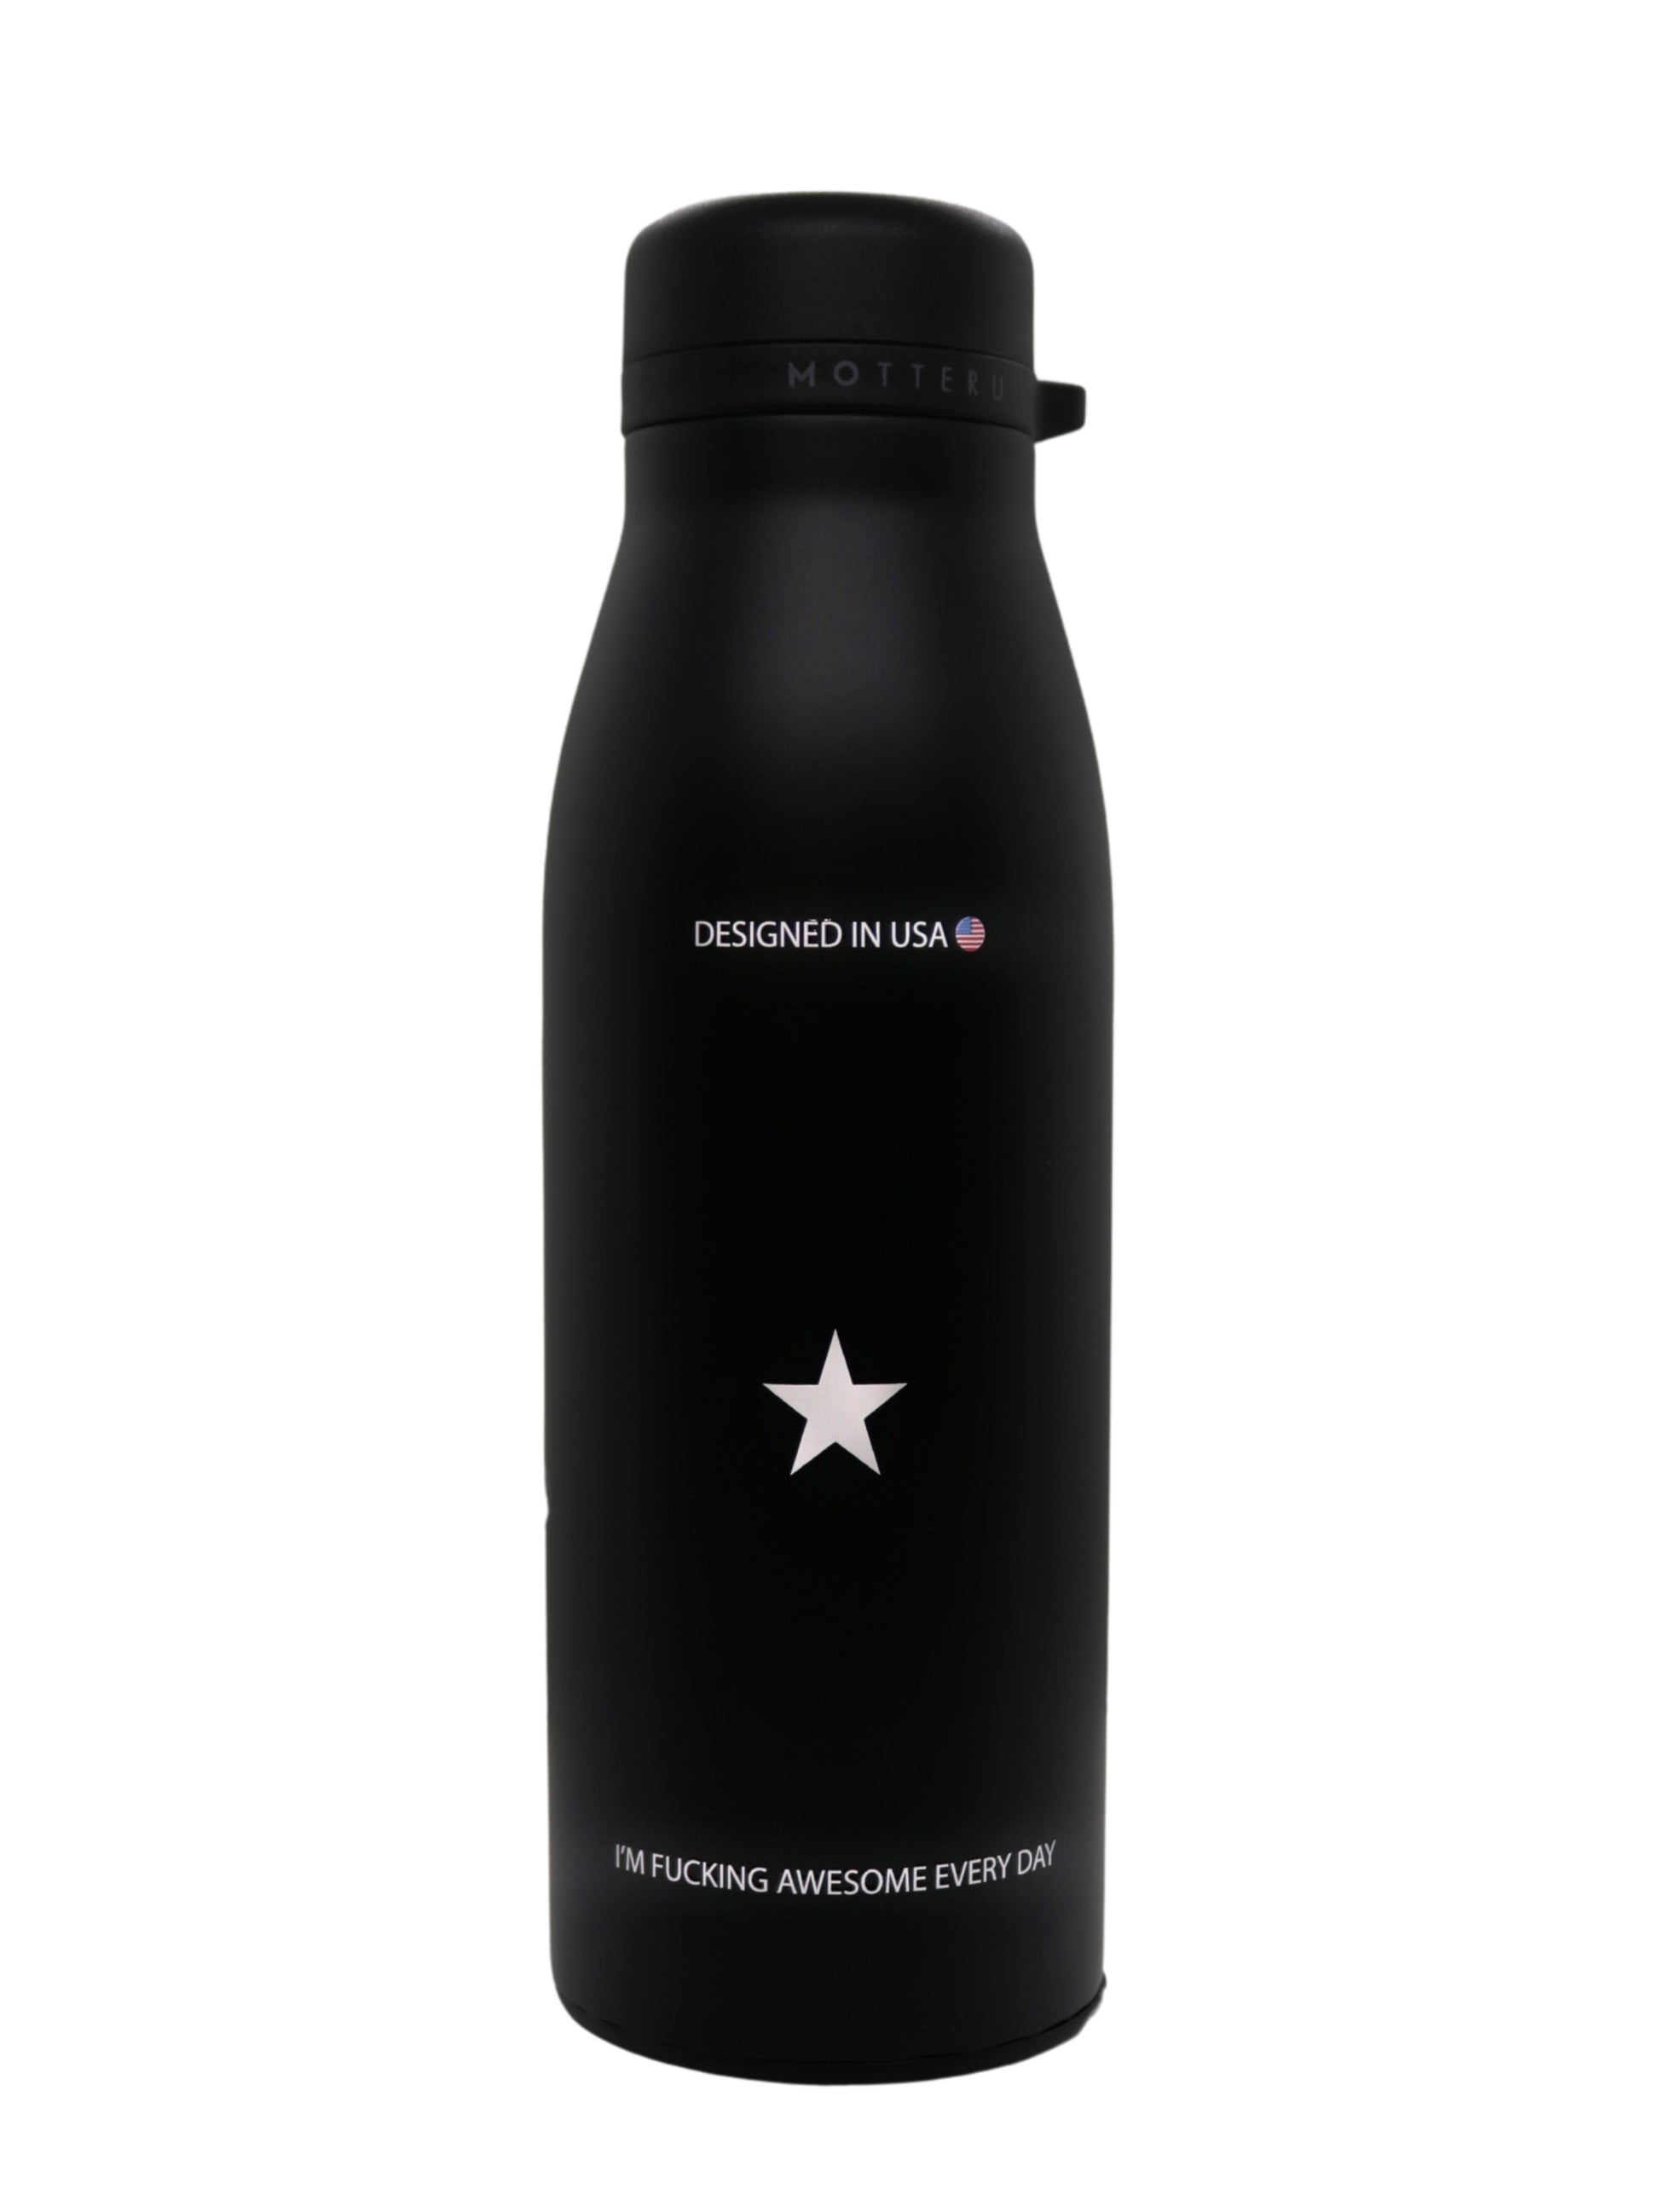 アメリカデザインのスタイリッシュなブラックステンレスボトル、日々の素晴らしさを称えるメッセージ付き